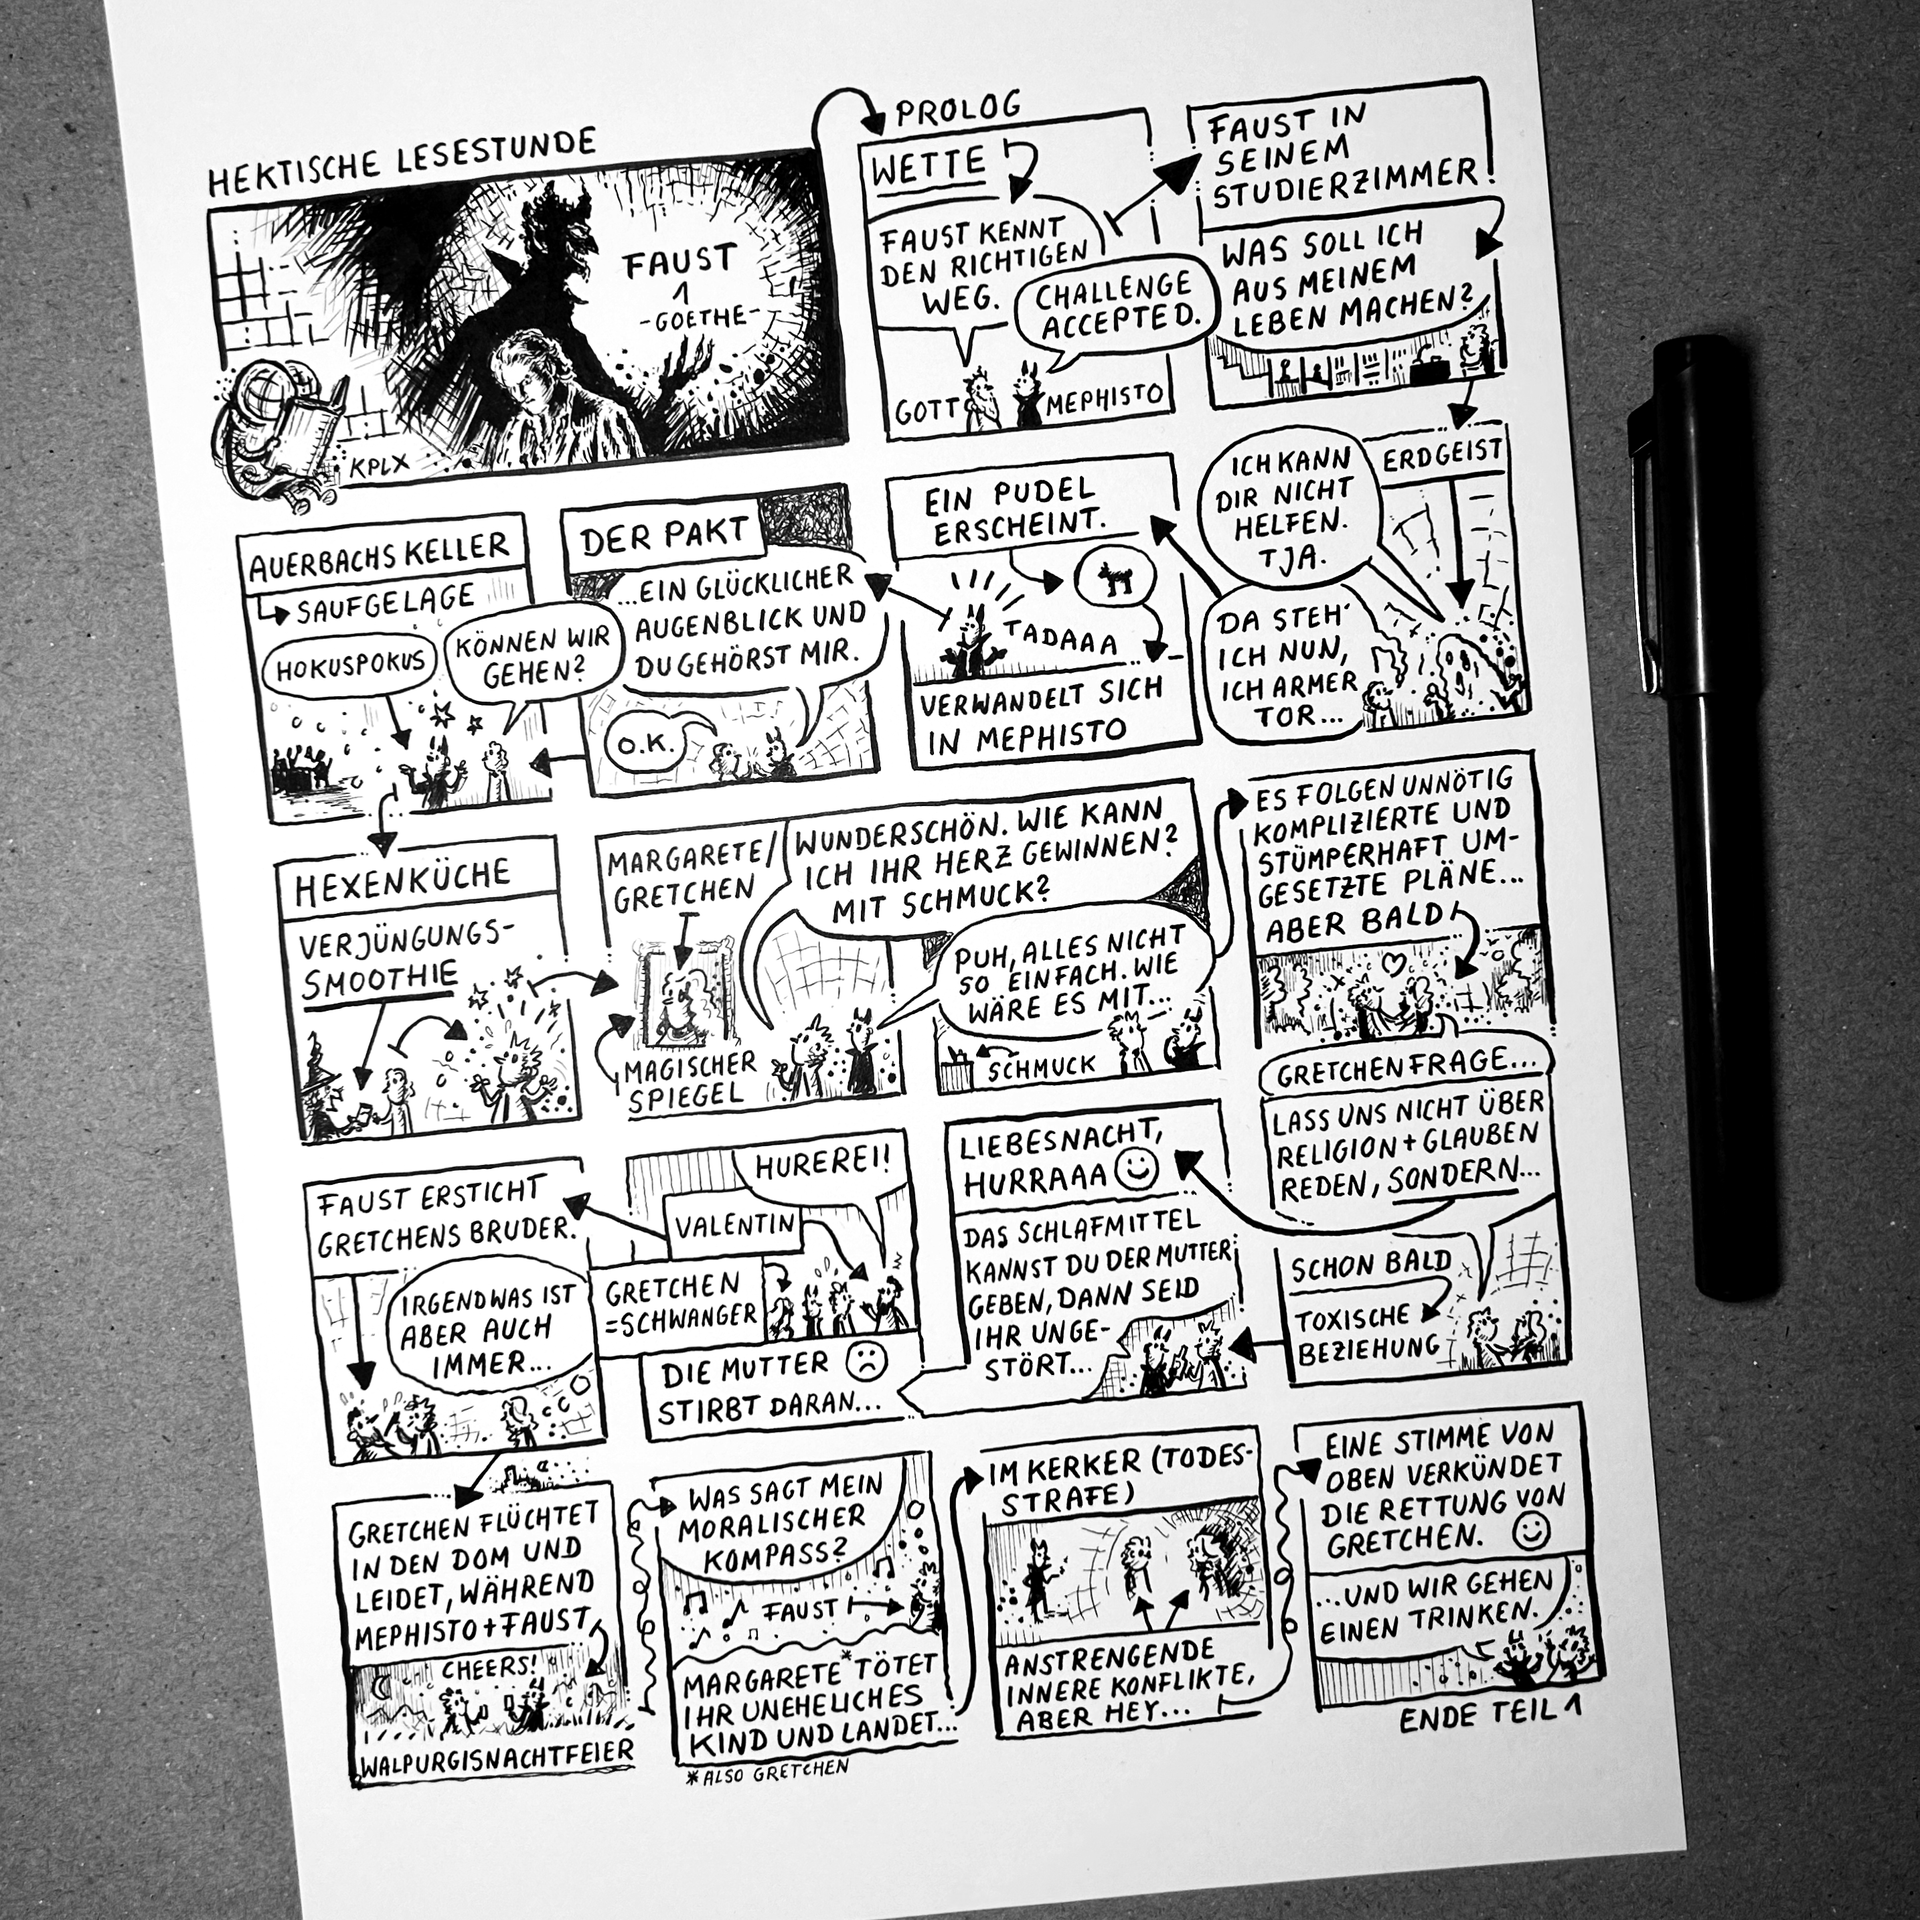 Tusche+A4+Comic: Panels, die miteinander verbunden sind und hektisch Faust 1 erzählen